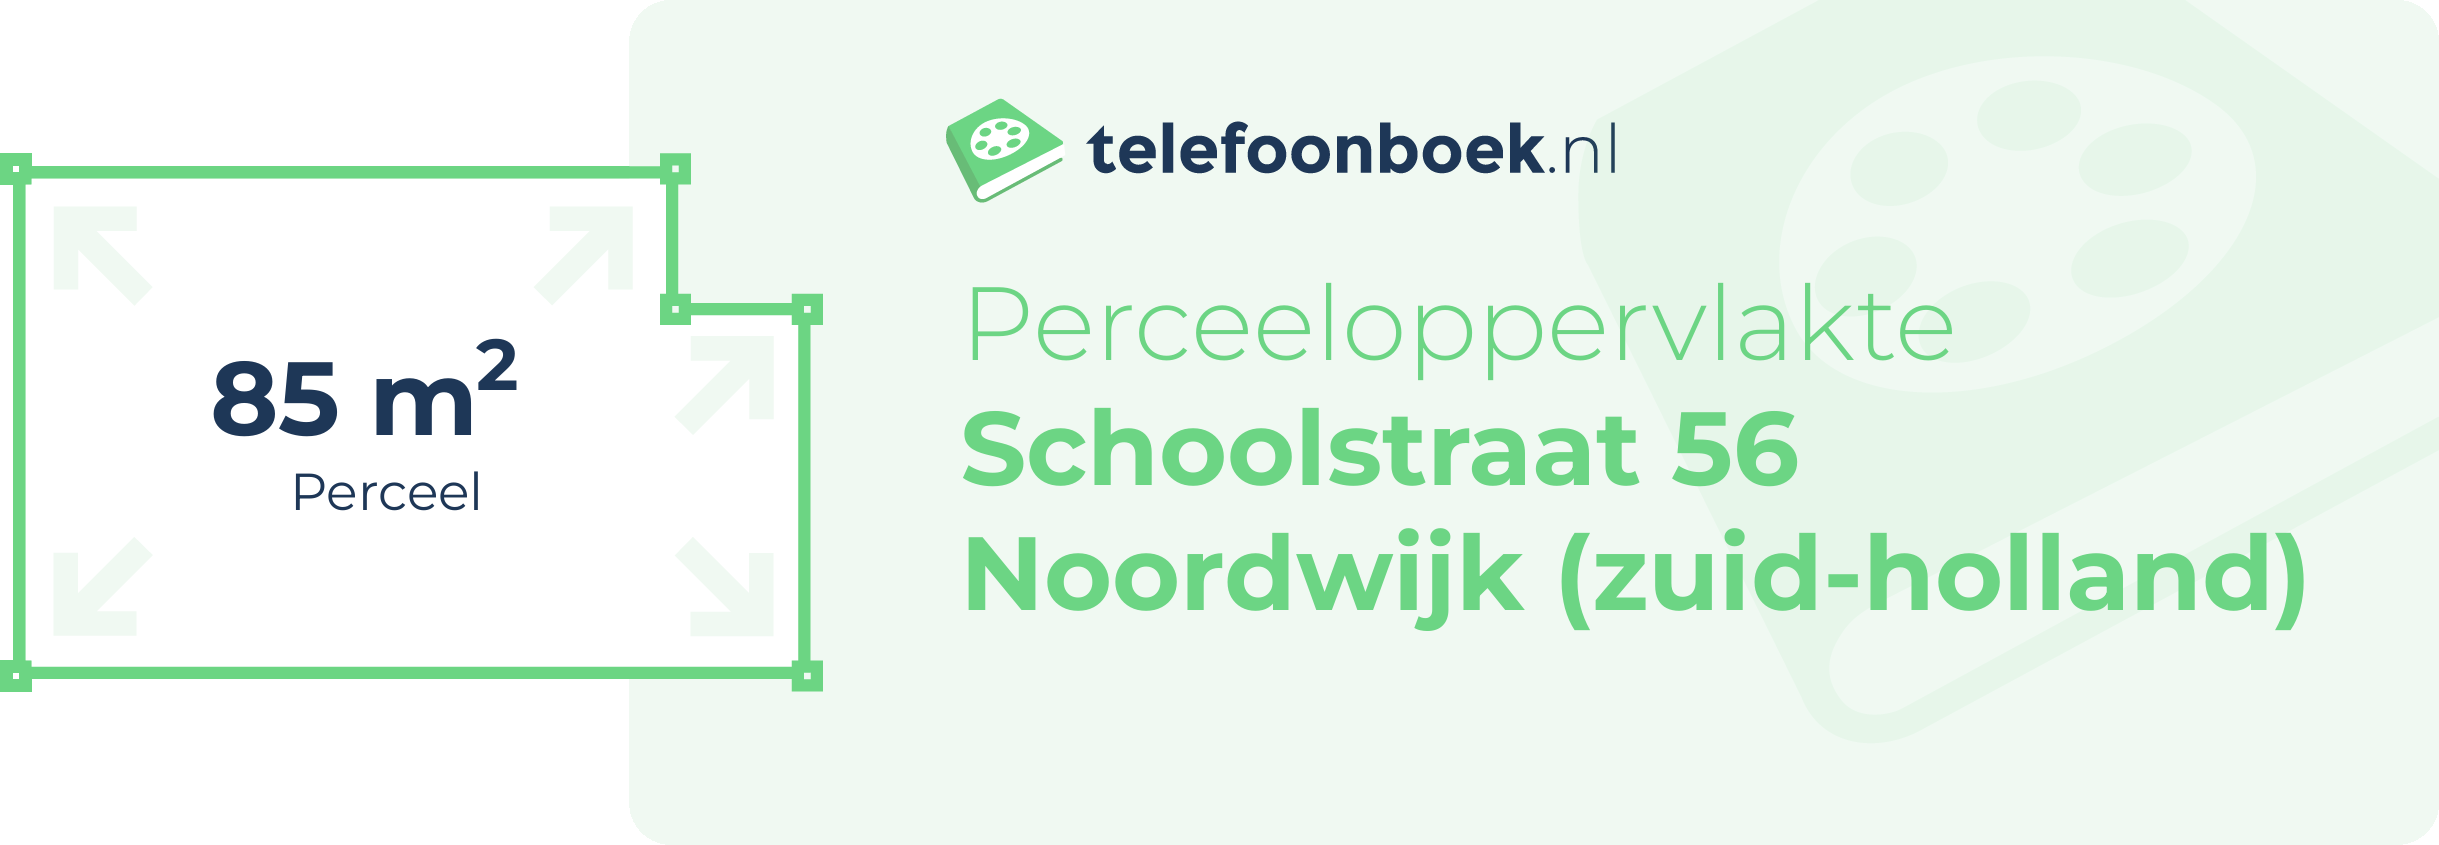 Perceeloppervlakte Schoolstraat 56 Noordwijk (Zuid-Holland)